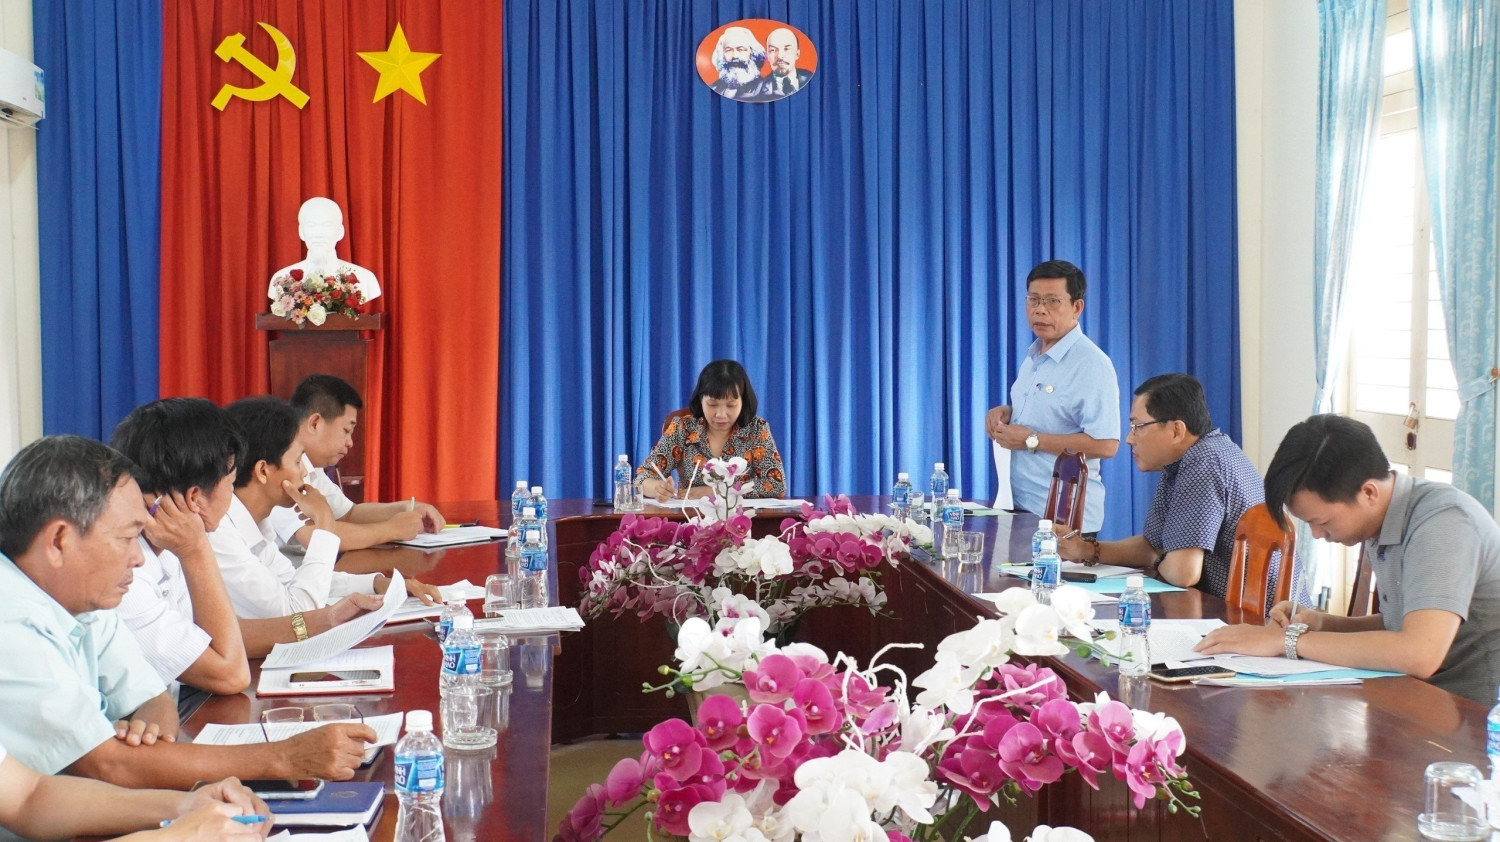 Tổ đại biểu HĐND huyện Tân Biên đơn vị số 3 xã Thạnh Tây giám sát công tác huy động, quản lý, sử dụng các loại quỹ, khoản đóng góp của người dân trên địa bàn xã Thạnh Tây